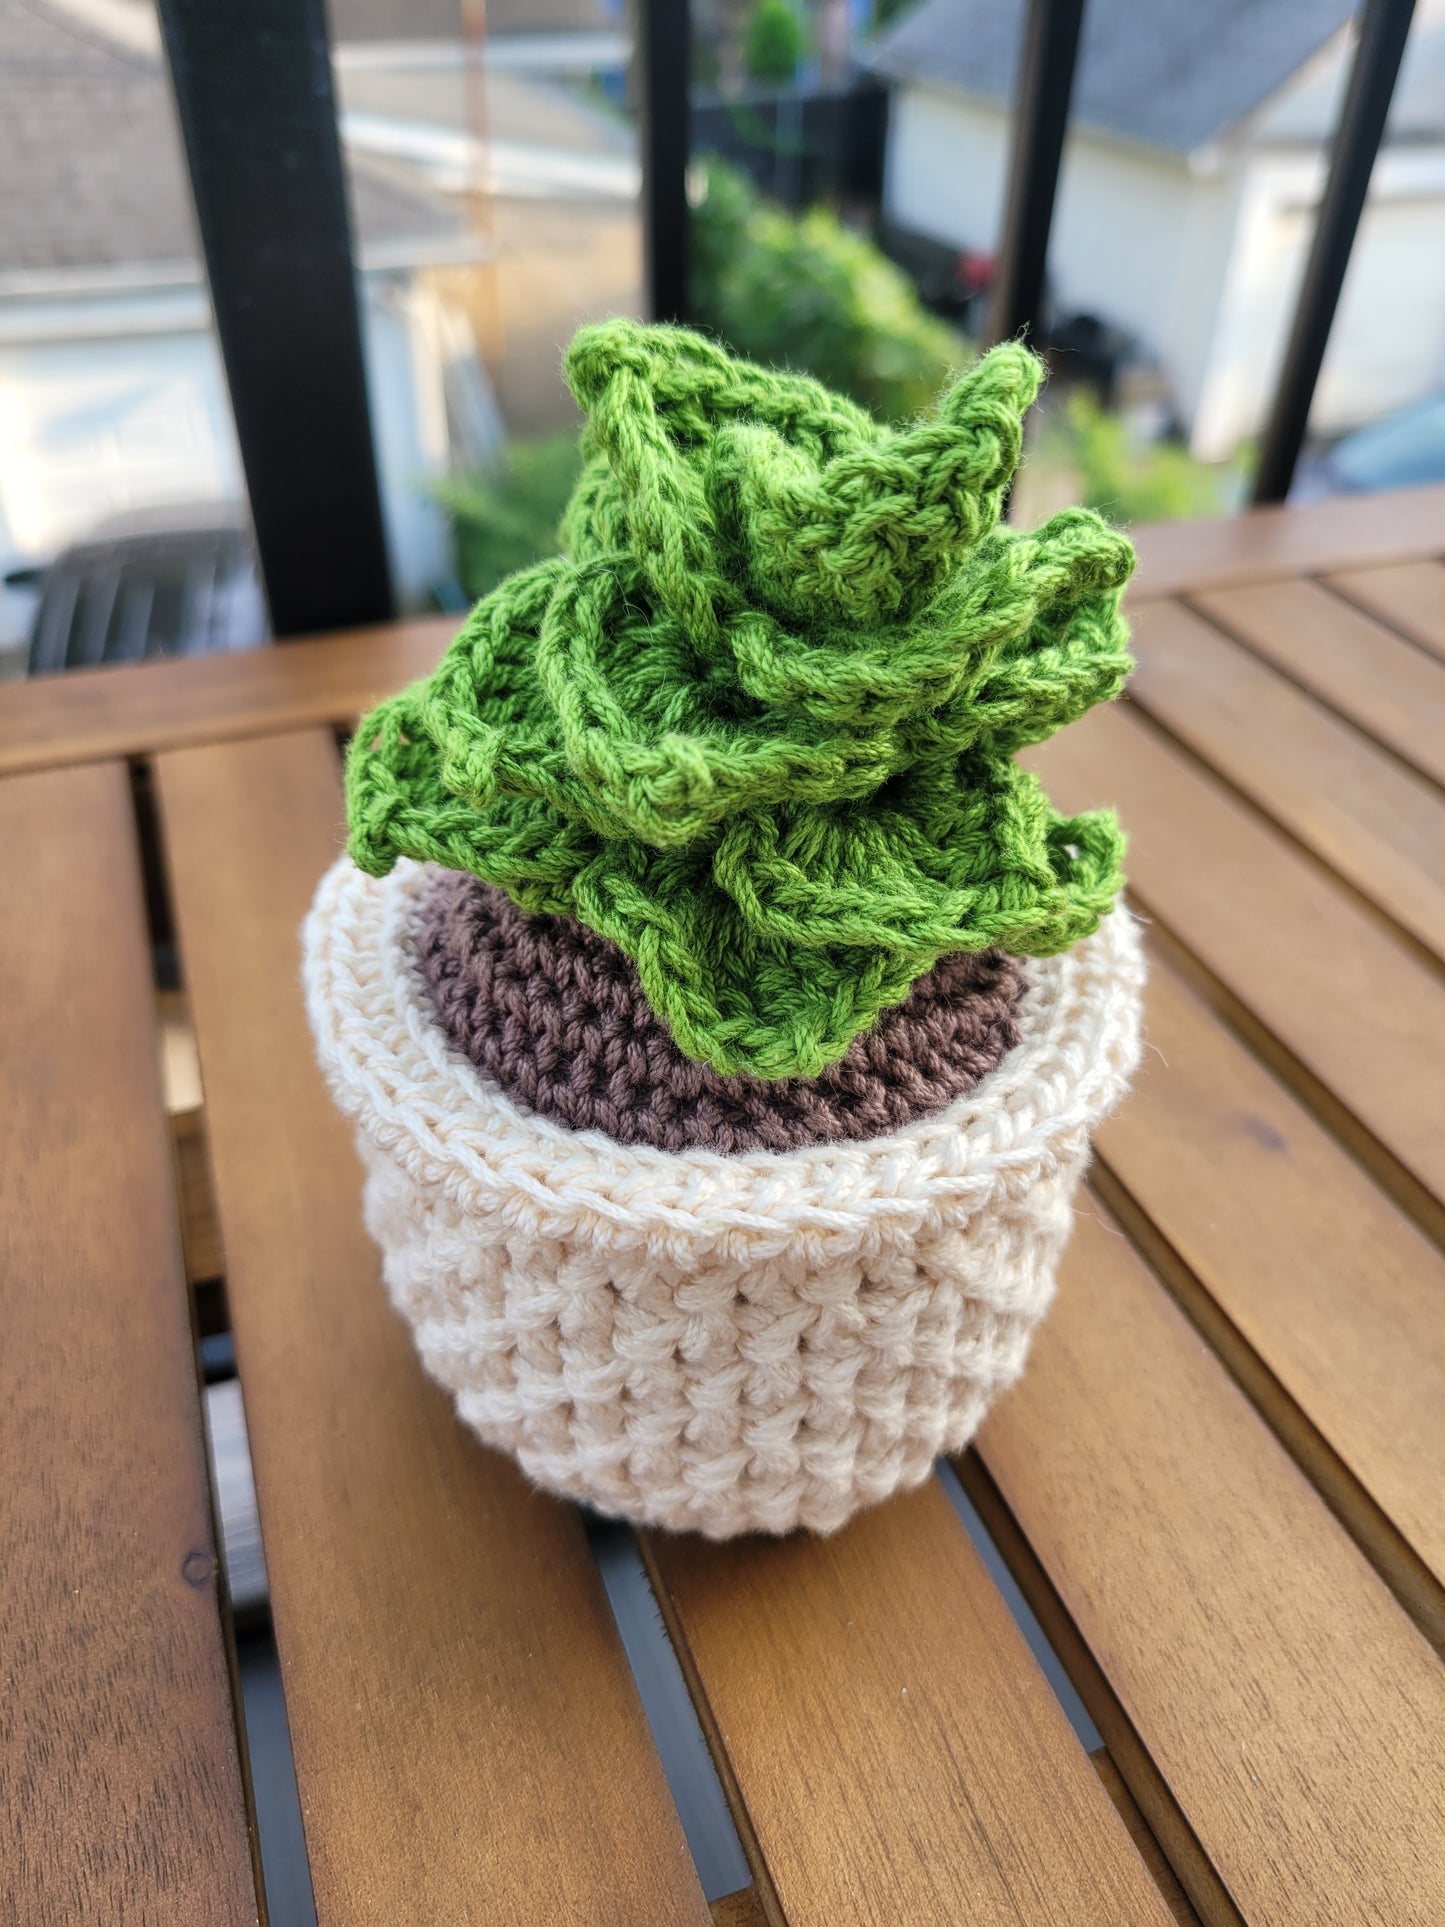 Crochet Potted Succulent